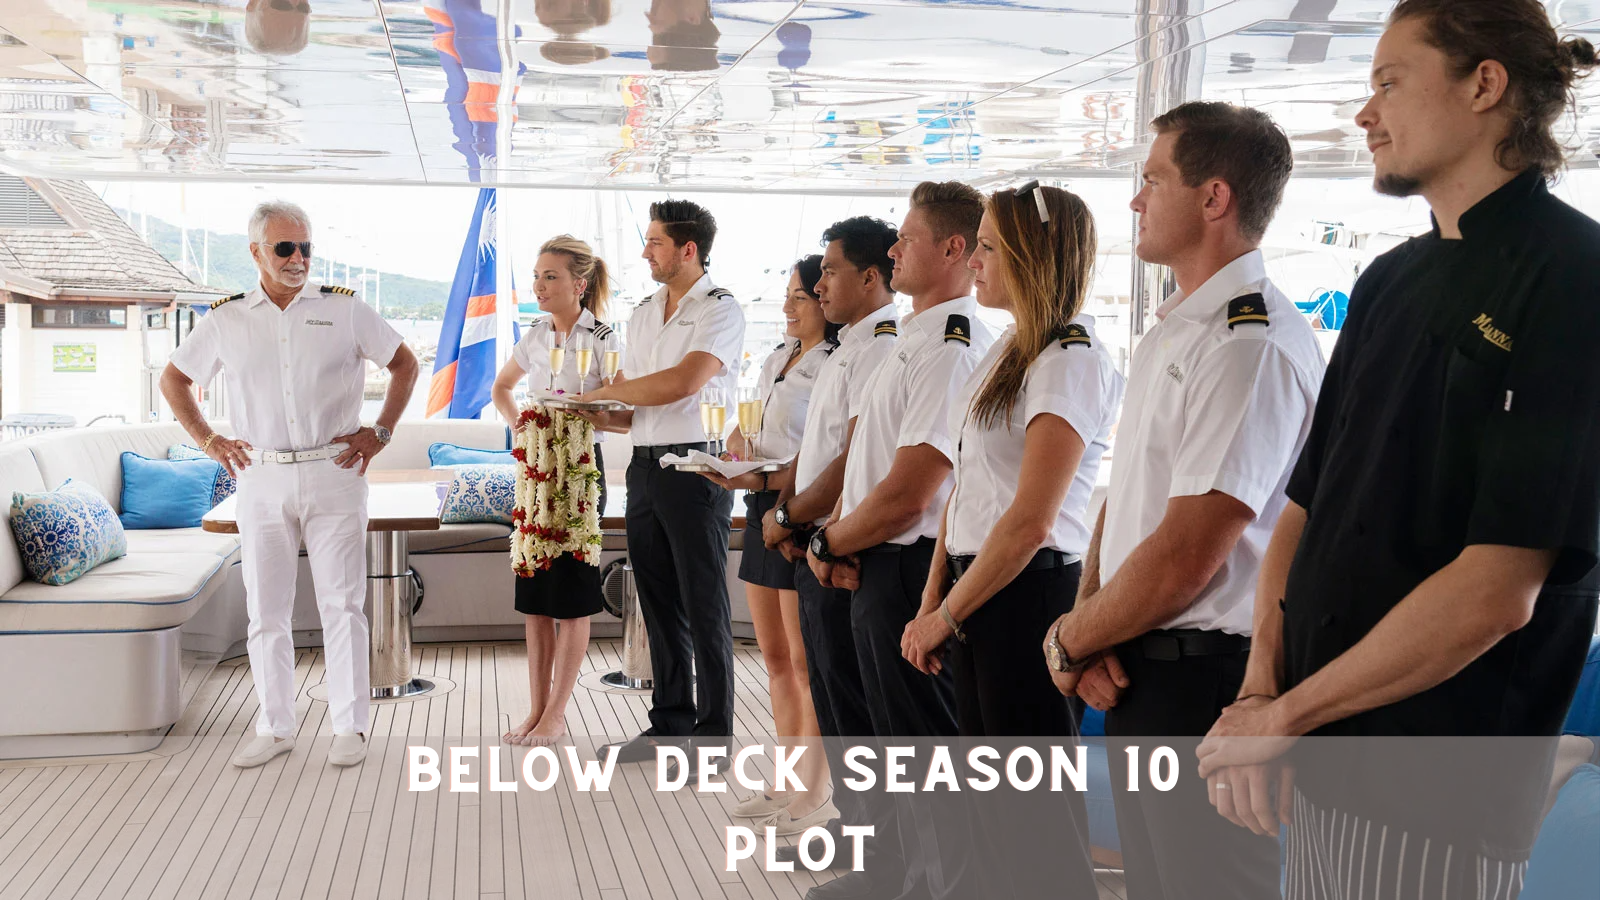 Below Deck Season 10 Plot